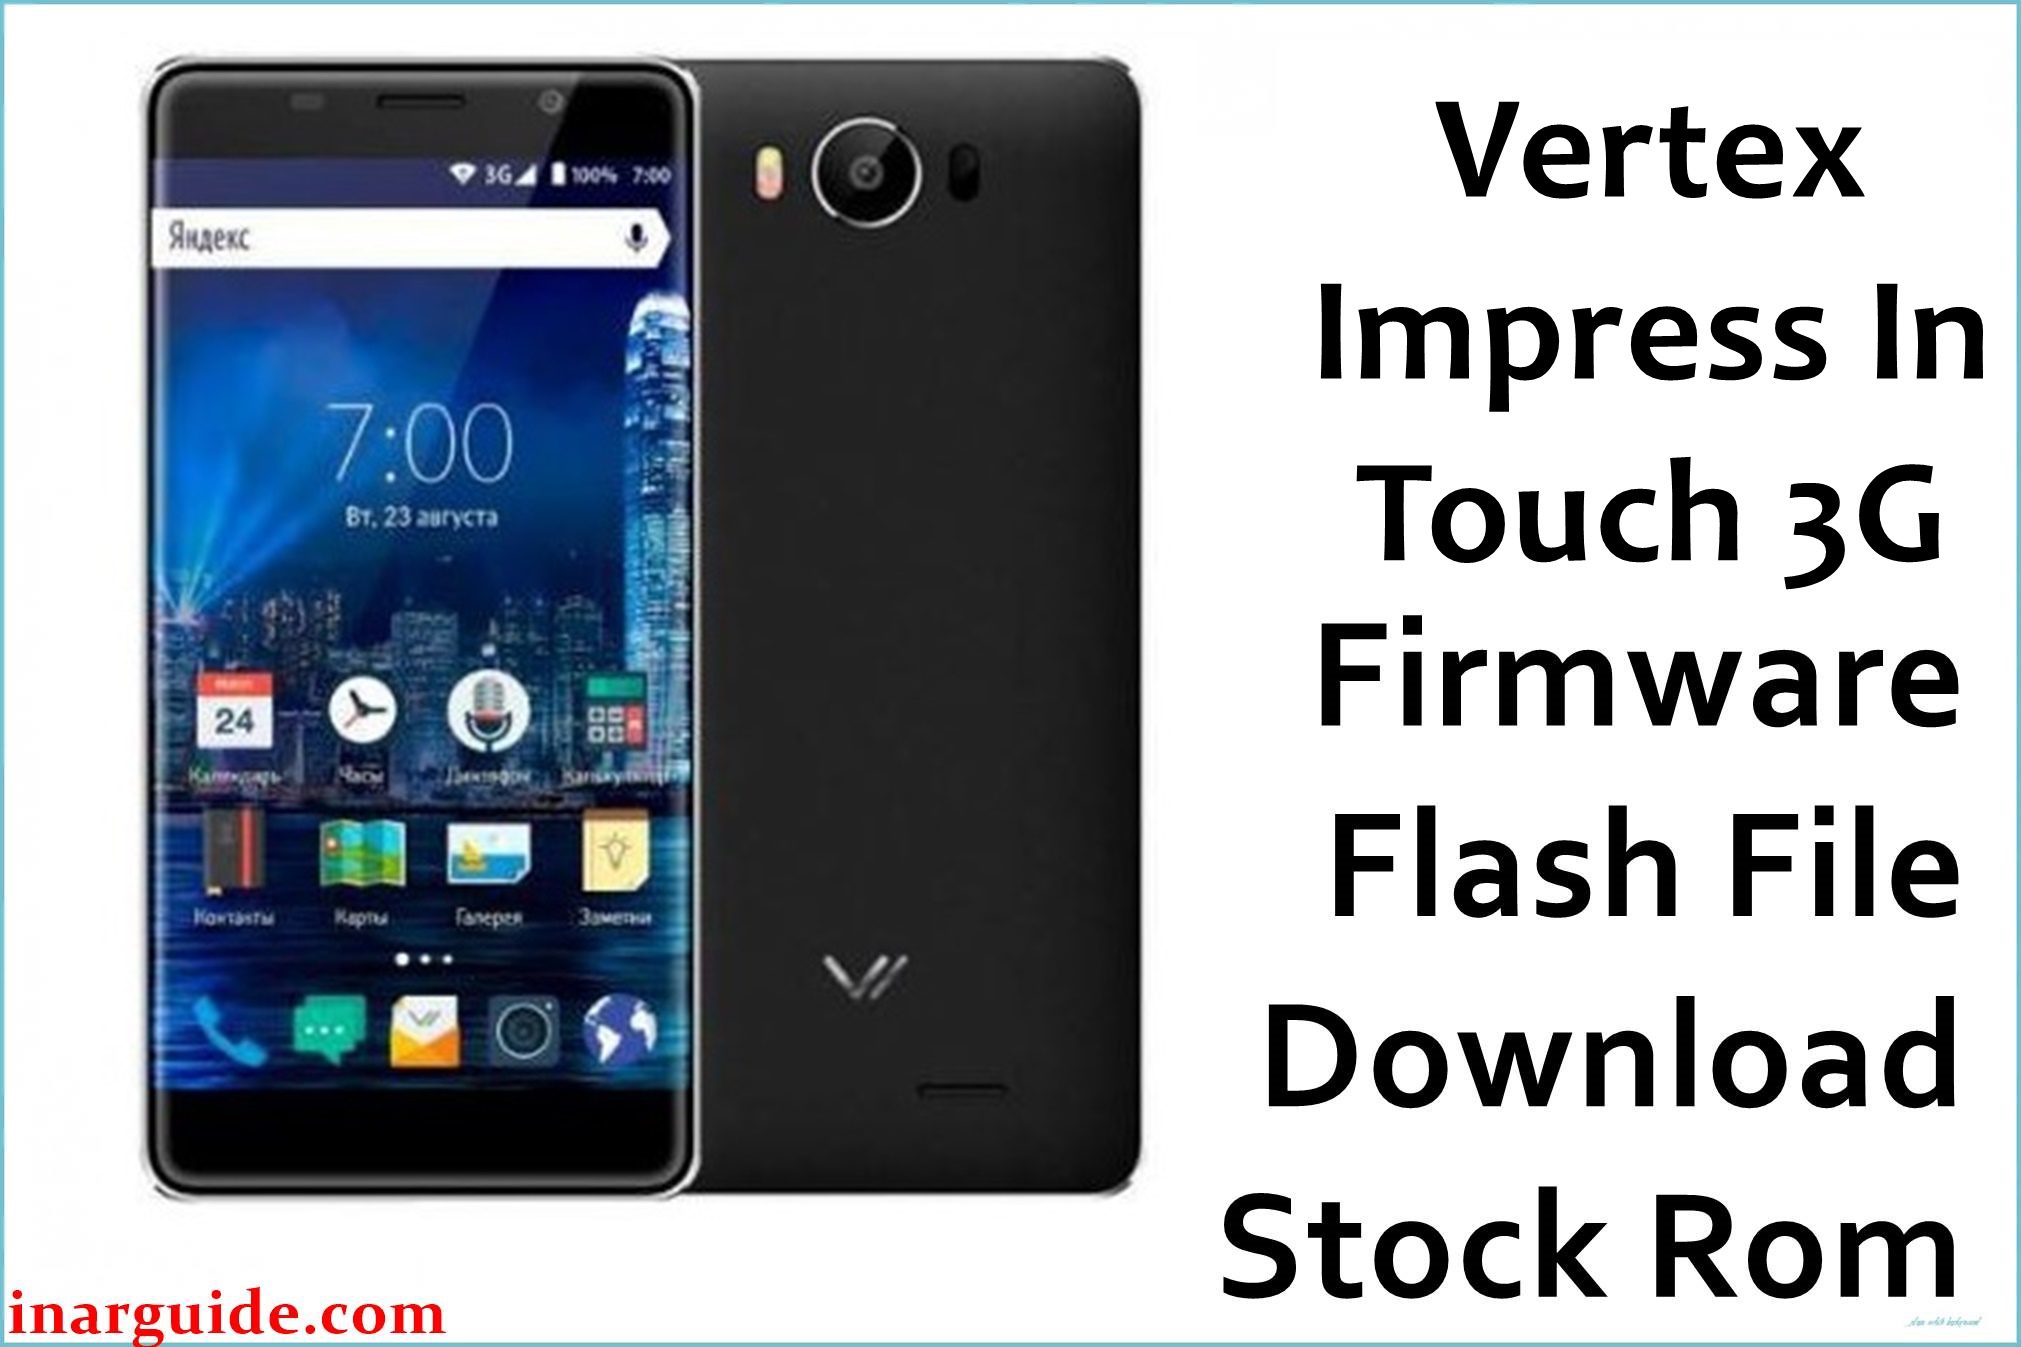 Vertex Impress InTouch 3G